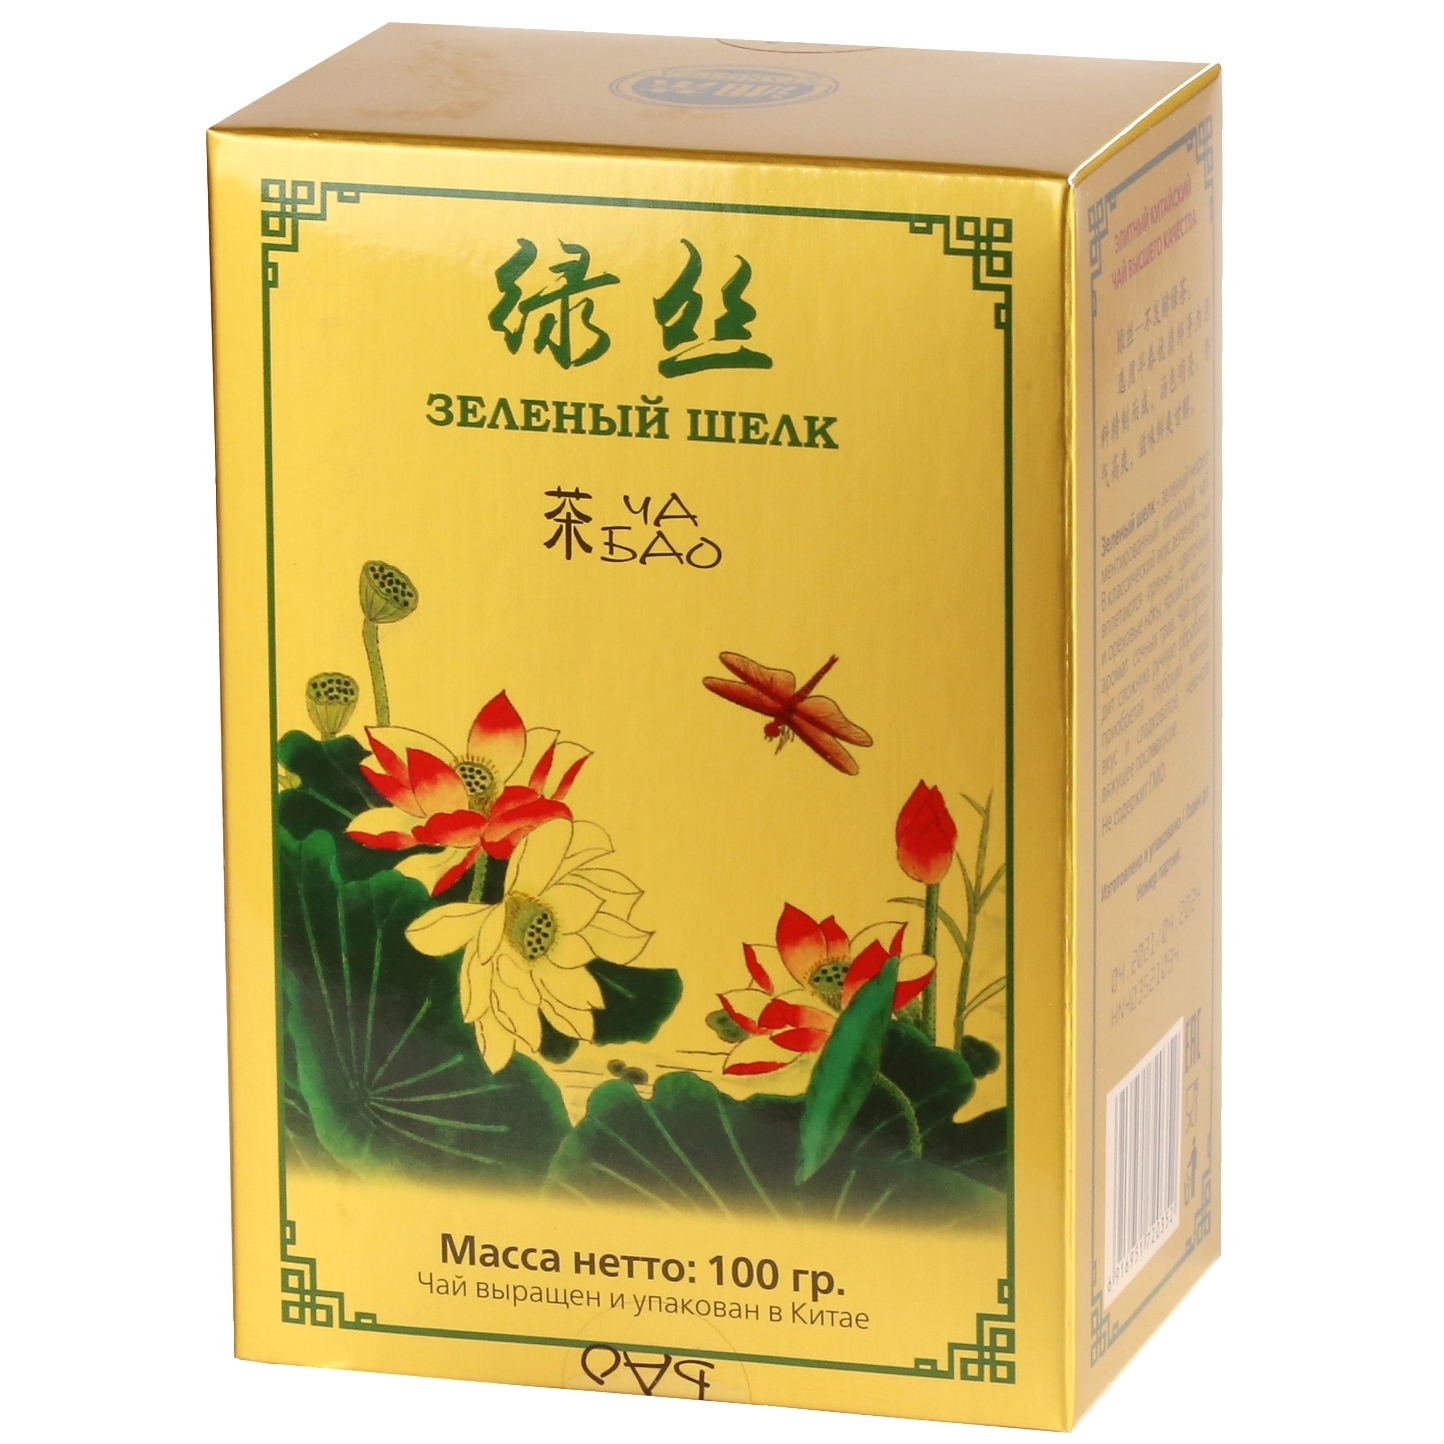 Чай зеленый листовой Ча Бао Зеленый шелк, Китай, 100 г чай зеленый ча бао люй ча 100 г